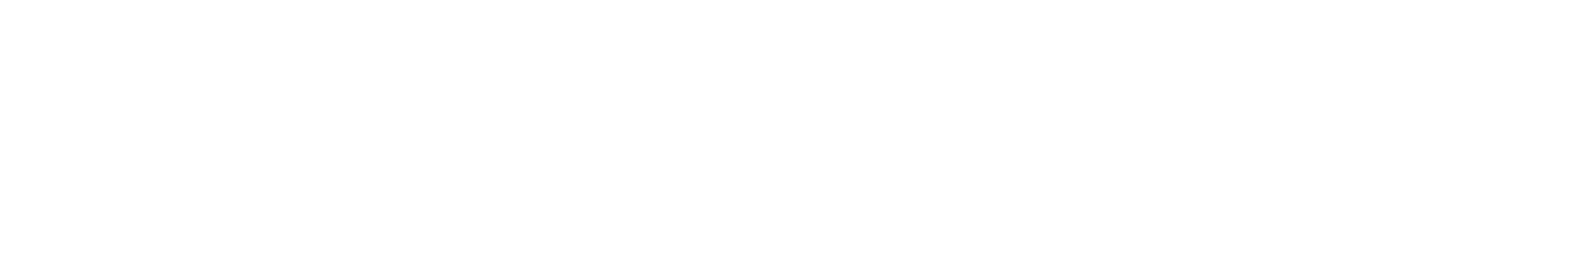 Aurora Cannabis Logo groß für dunkle Hintergründe (transparentes PNG)